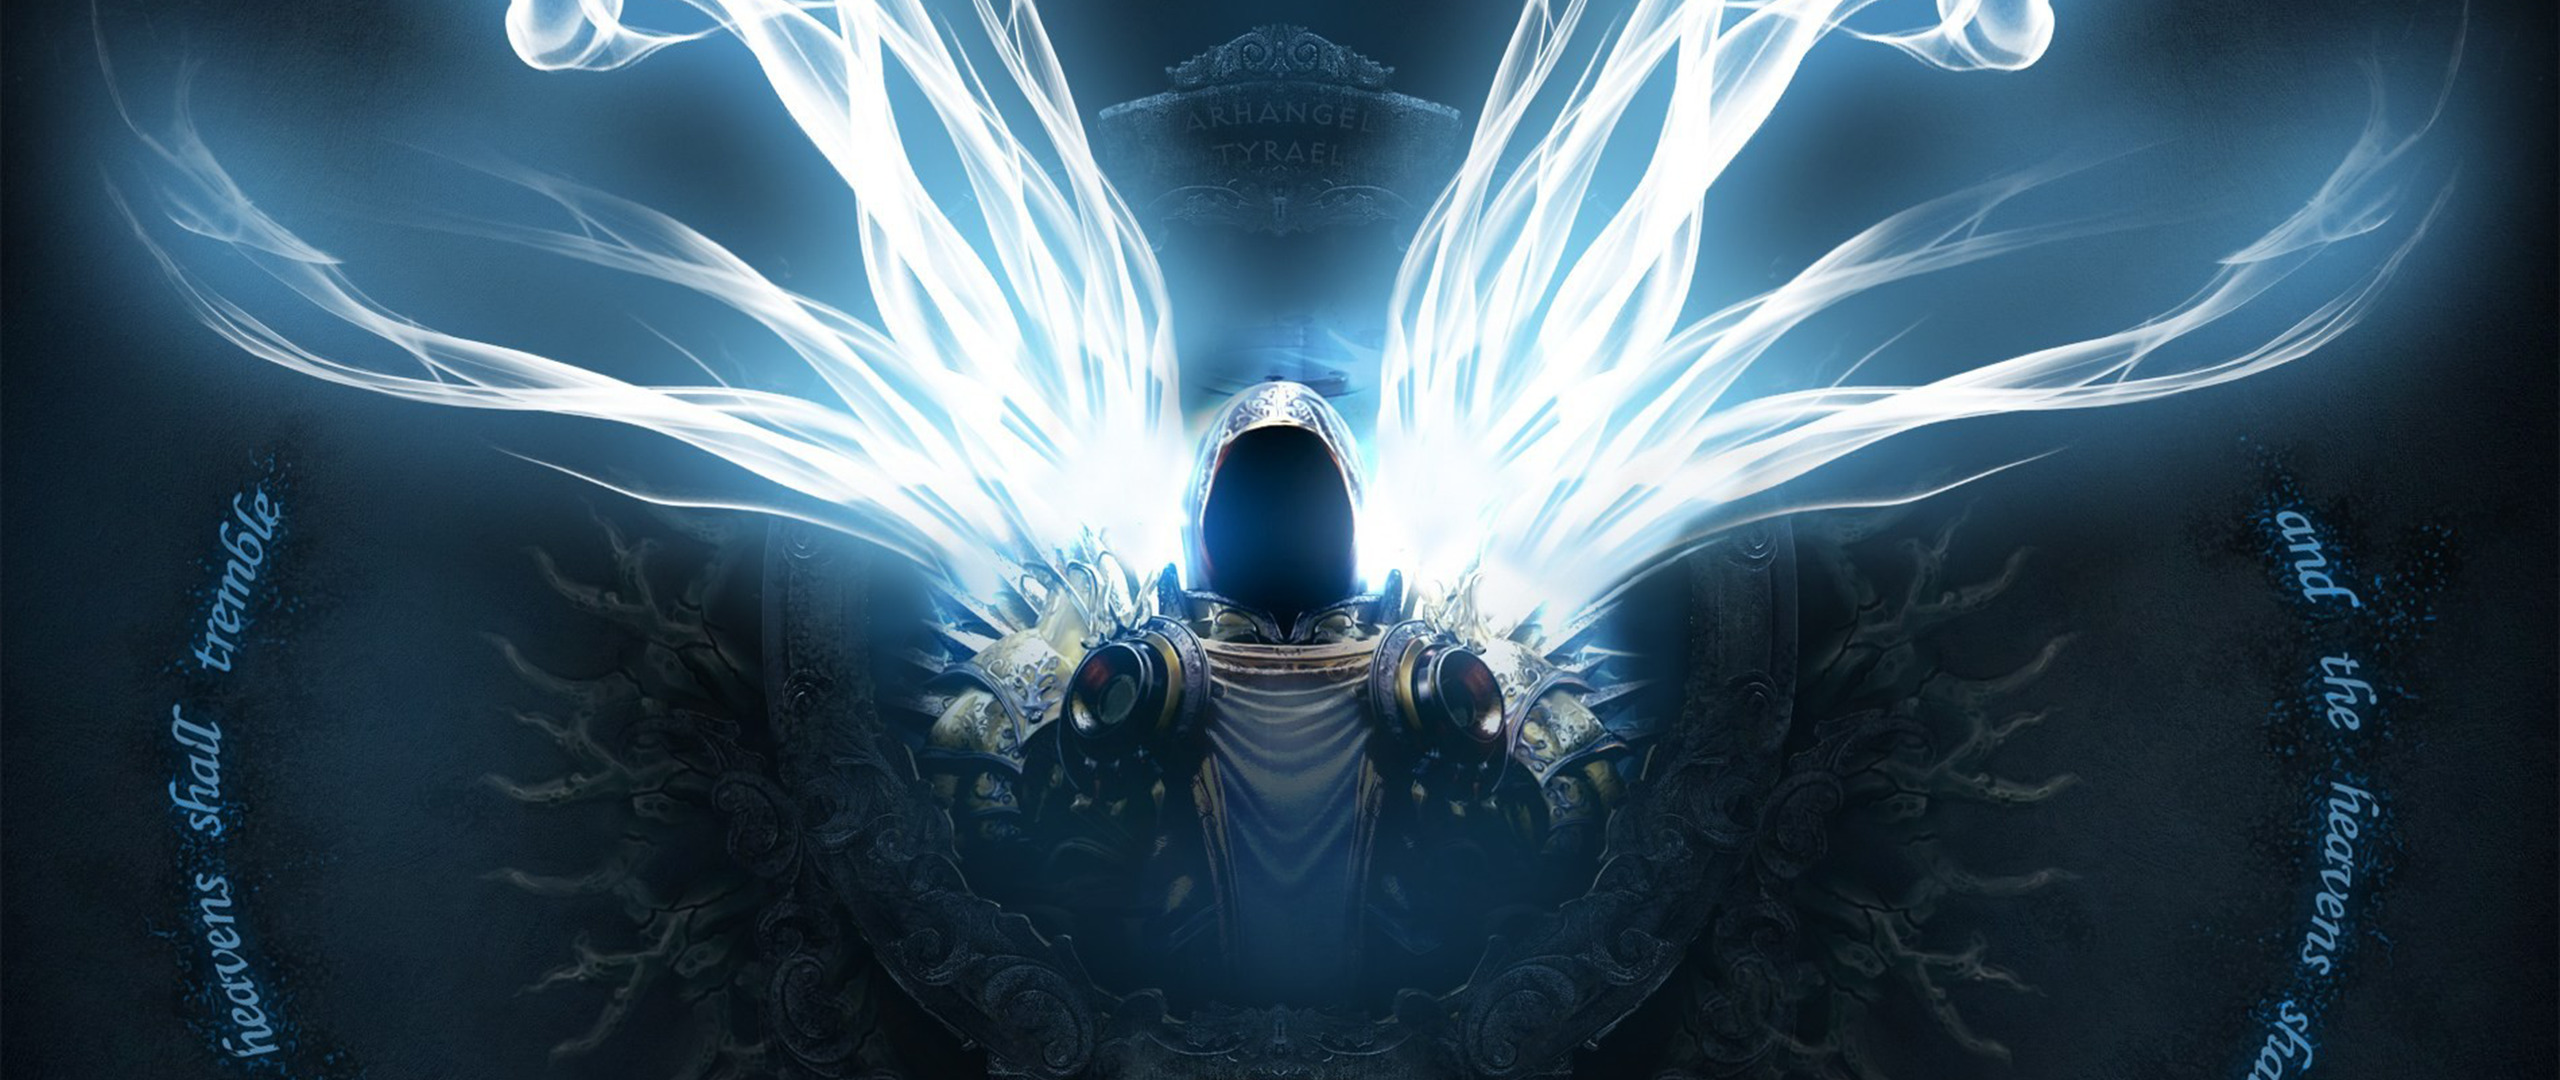 wings of justice diablo 3